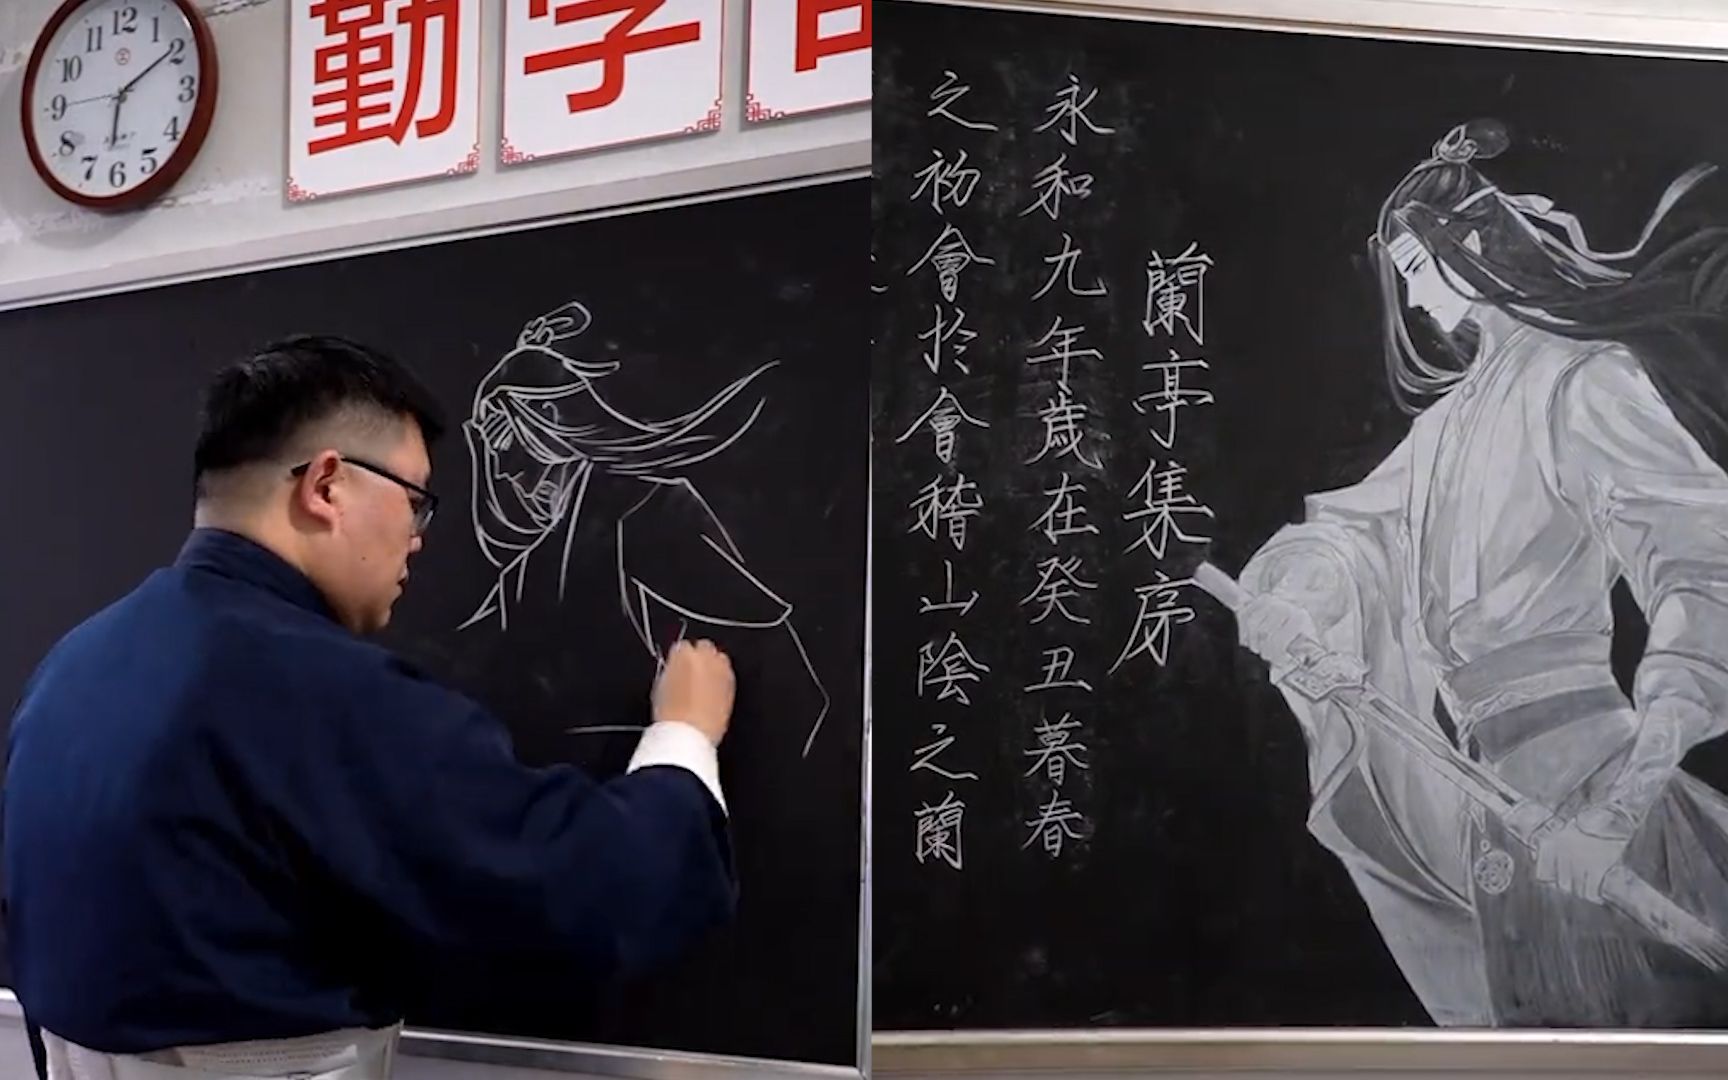 粉笔马良!小学老师创作古风黑板报,诗词与国漫结合显中国式浪漫